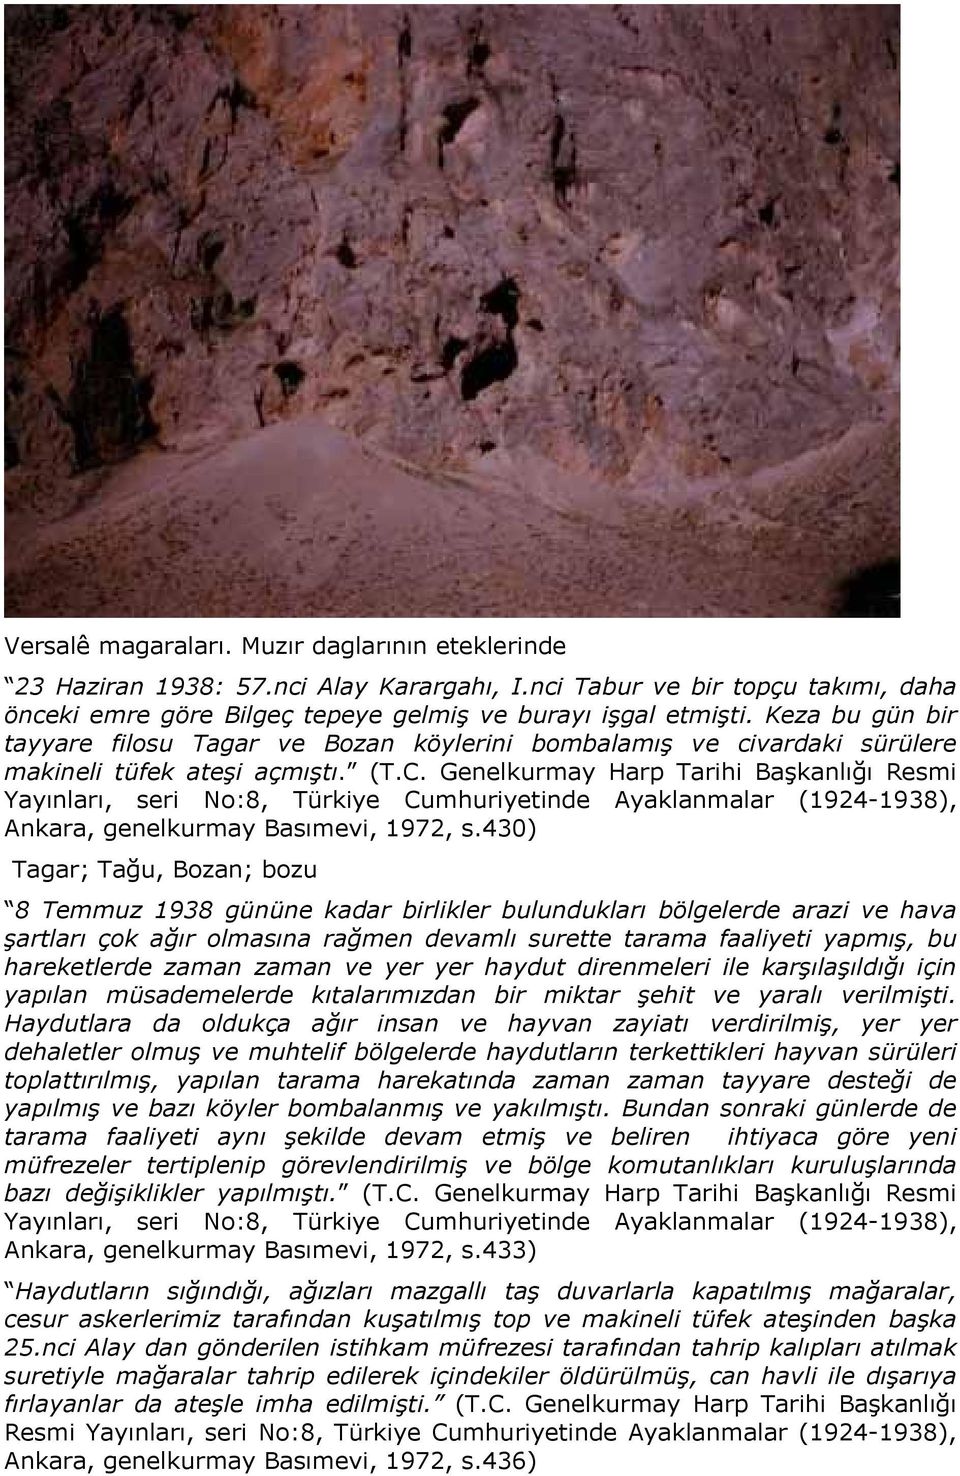 Genelkurmay Harp Tarihi Başkanlığı Resmi Yayınları, seri No:8, Türkiye Cumhuriyetinde Ayaklanmalar (1924-1938), Ankara, genelkurmay Basımevi, 1972, s.